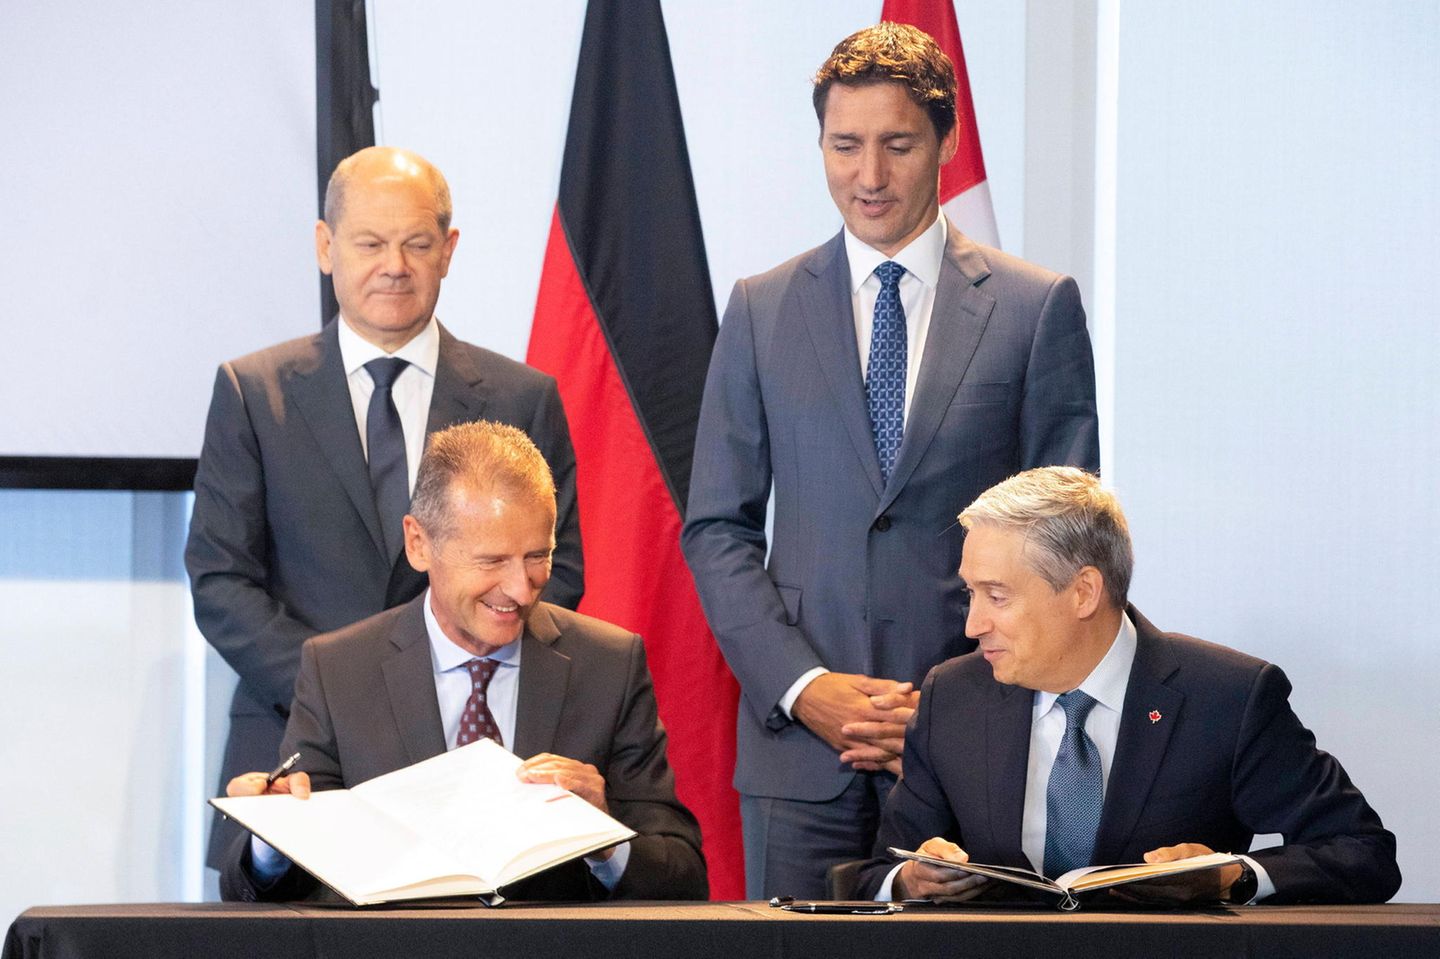 VW-Chef Herbert Diess (vorne links) unterzeichnete am Montag eine Absichtserklärtung mit dem kanadischen Wissenschafts-Minister François-Philippe Champagne (vorne rechts). Bundeskanzler Olaf Scholz und der kanadische Premierminister Justin Trudeau begleiteten den Termin